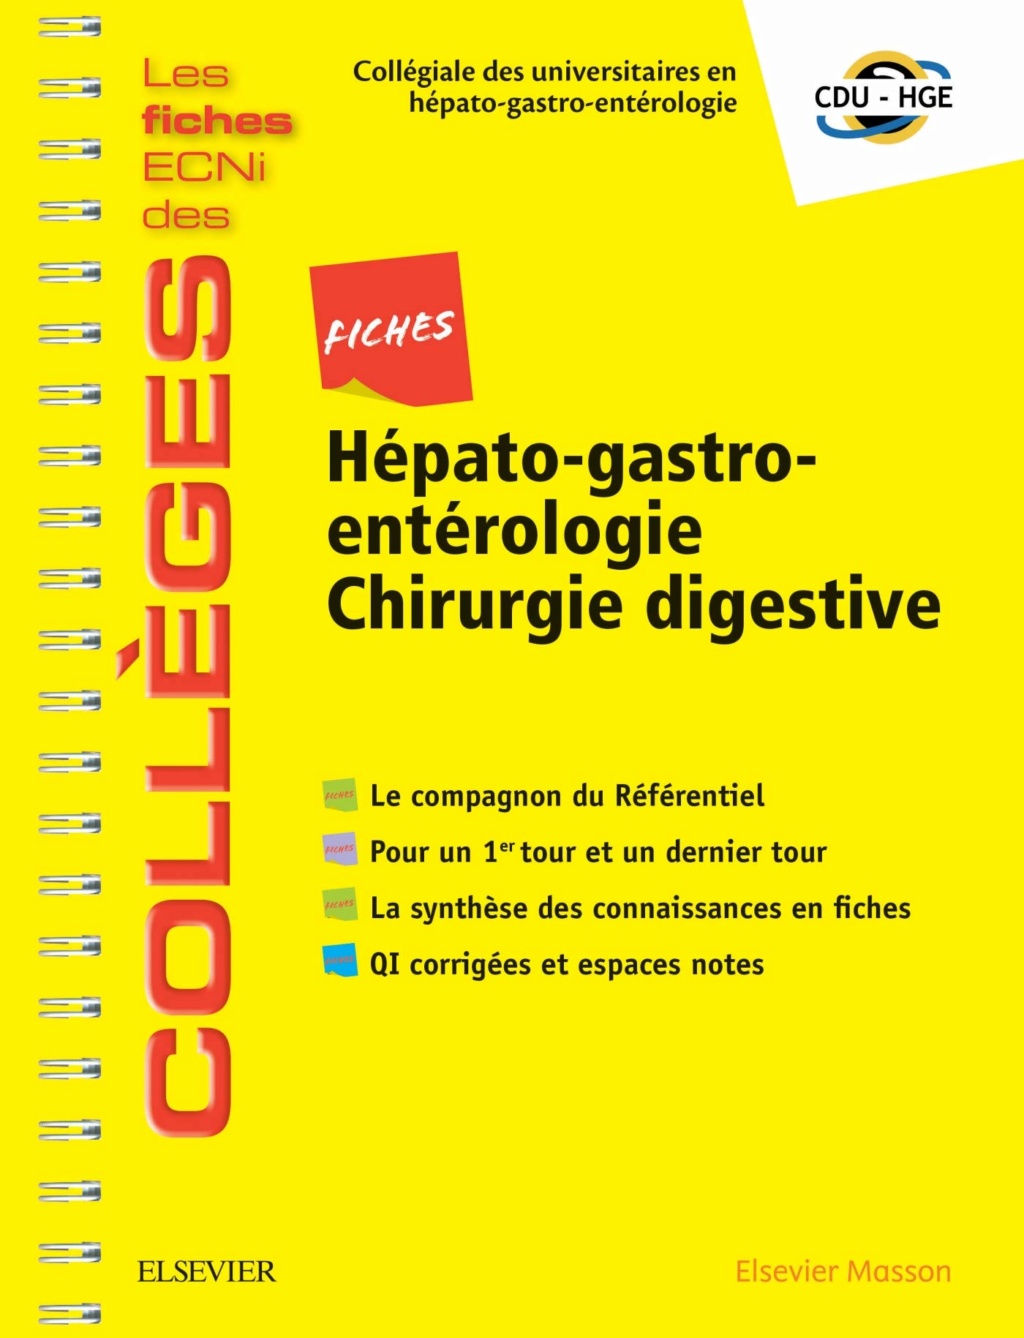 [résolu]Livres Médicales - Fiches Hépato-gastro-entérologie Chirurgie digestive: Les fiches ECNi et QI des Collèges 2019 - Page 35 Fiches11